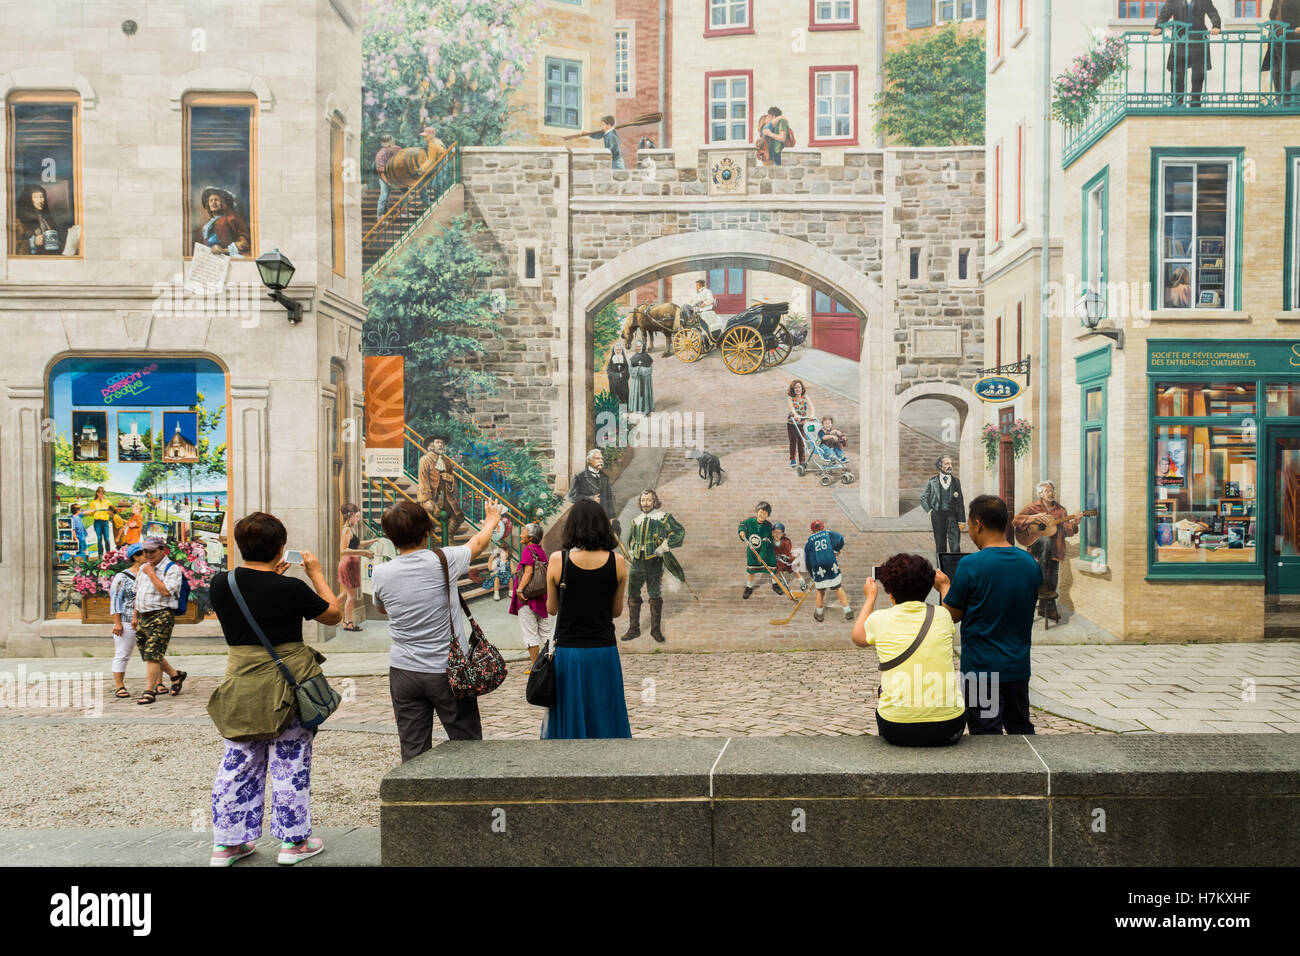 Les touristes de l'extraction de l'Asie en prenant des photographies en face de la fresque pour la population du Québec, "la ville de Québec", Québec, Canada Banque D'Images